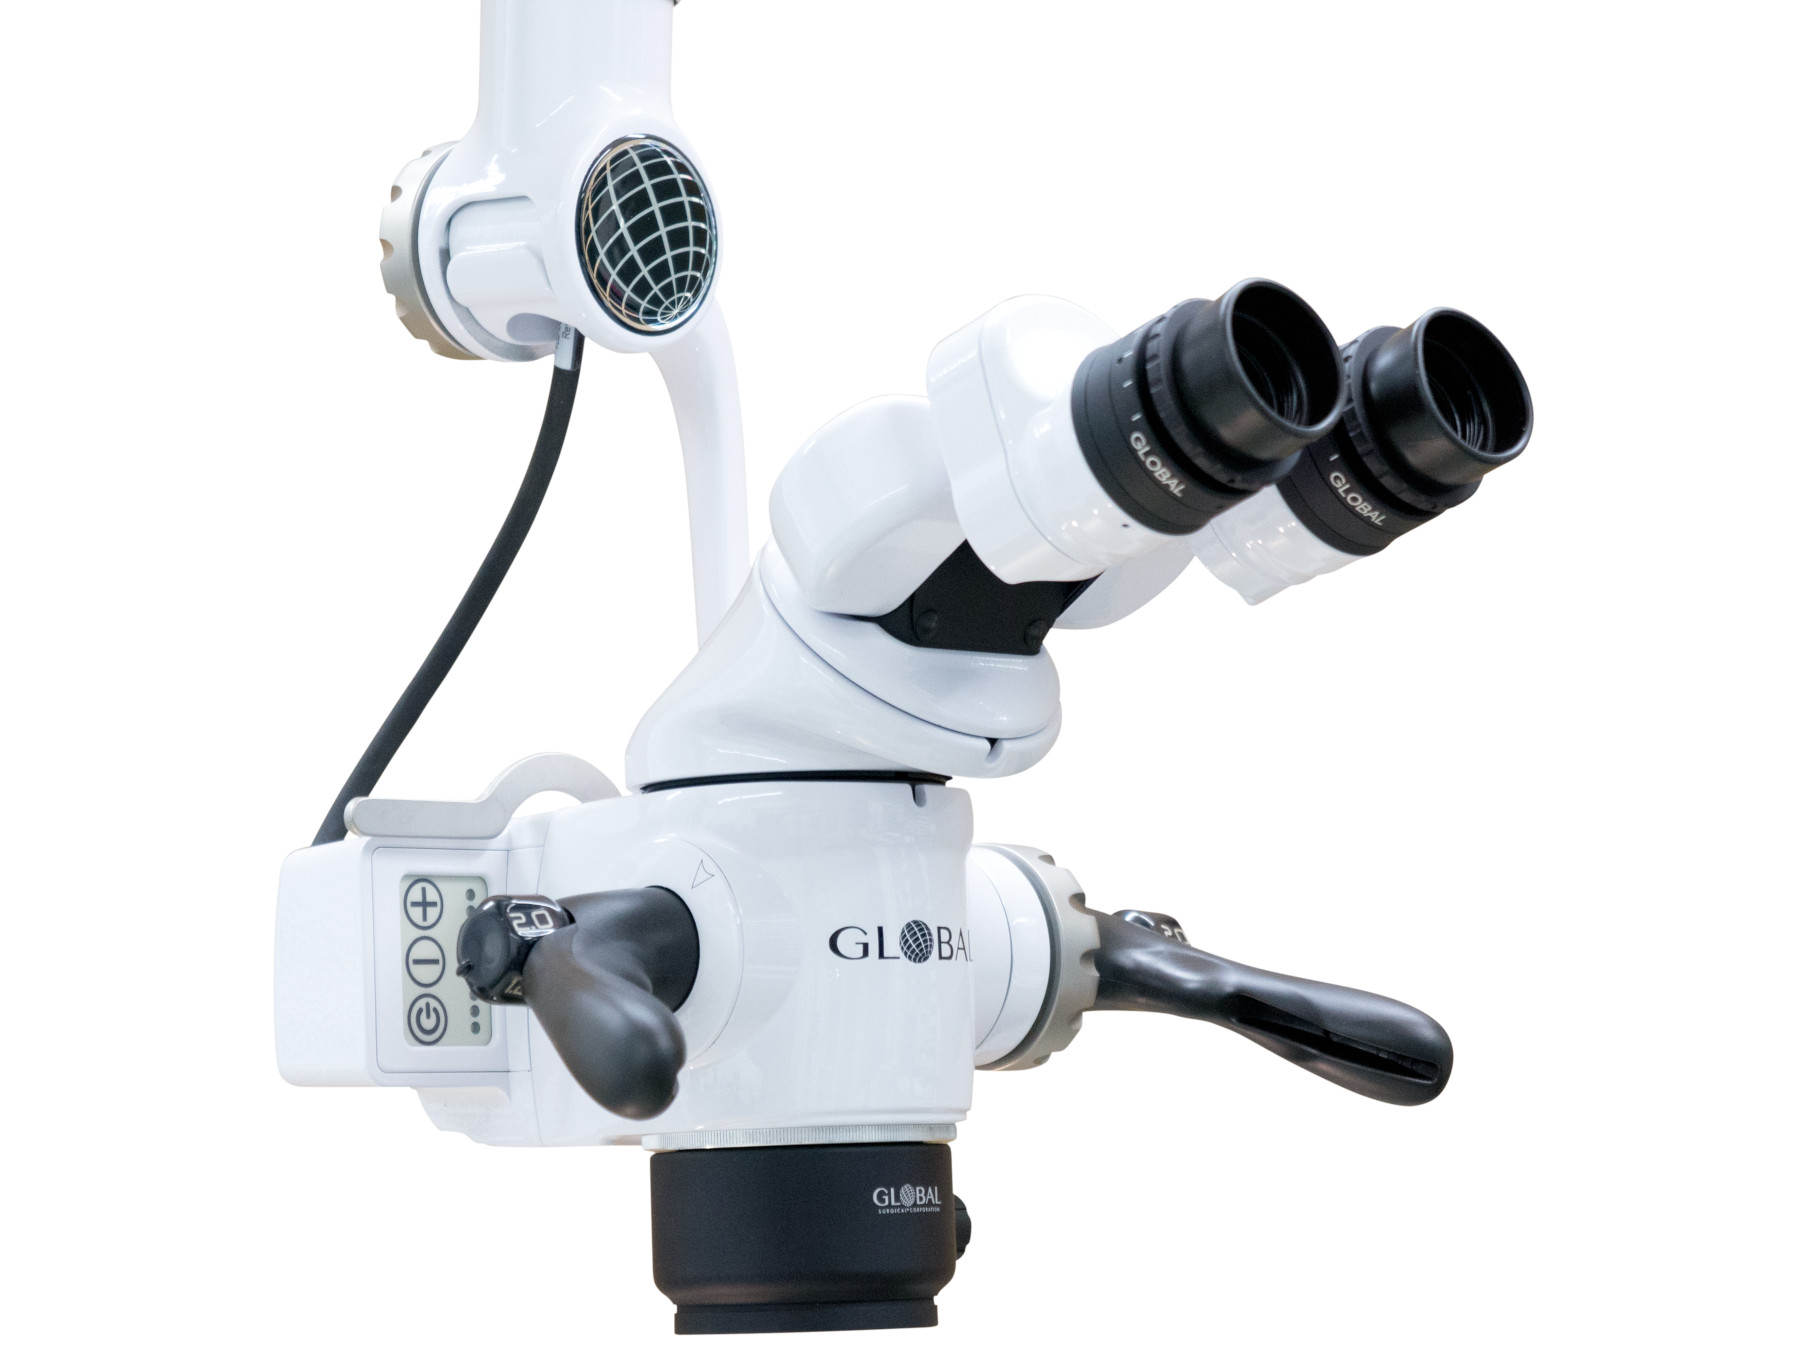 GLOBAL Dental-Mikroskope - Die A-Serie